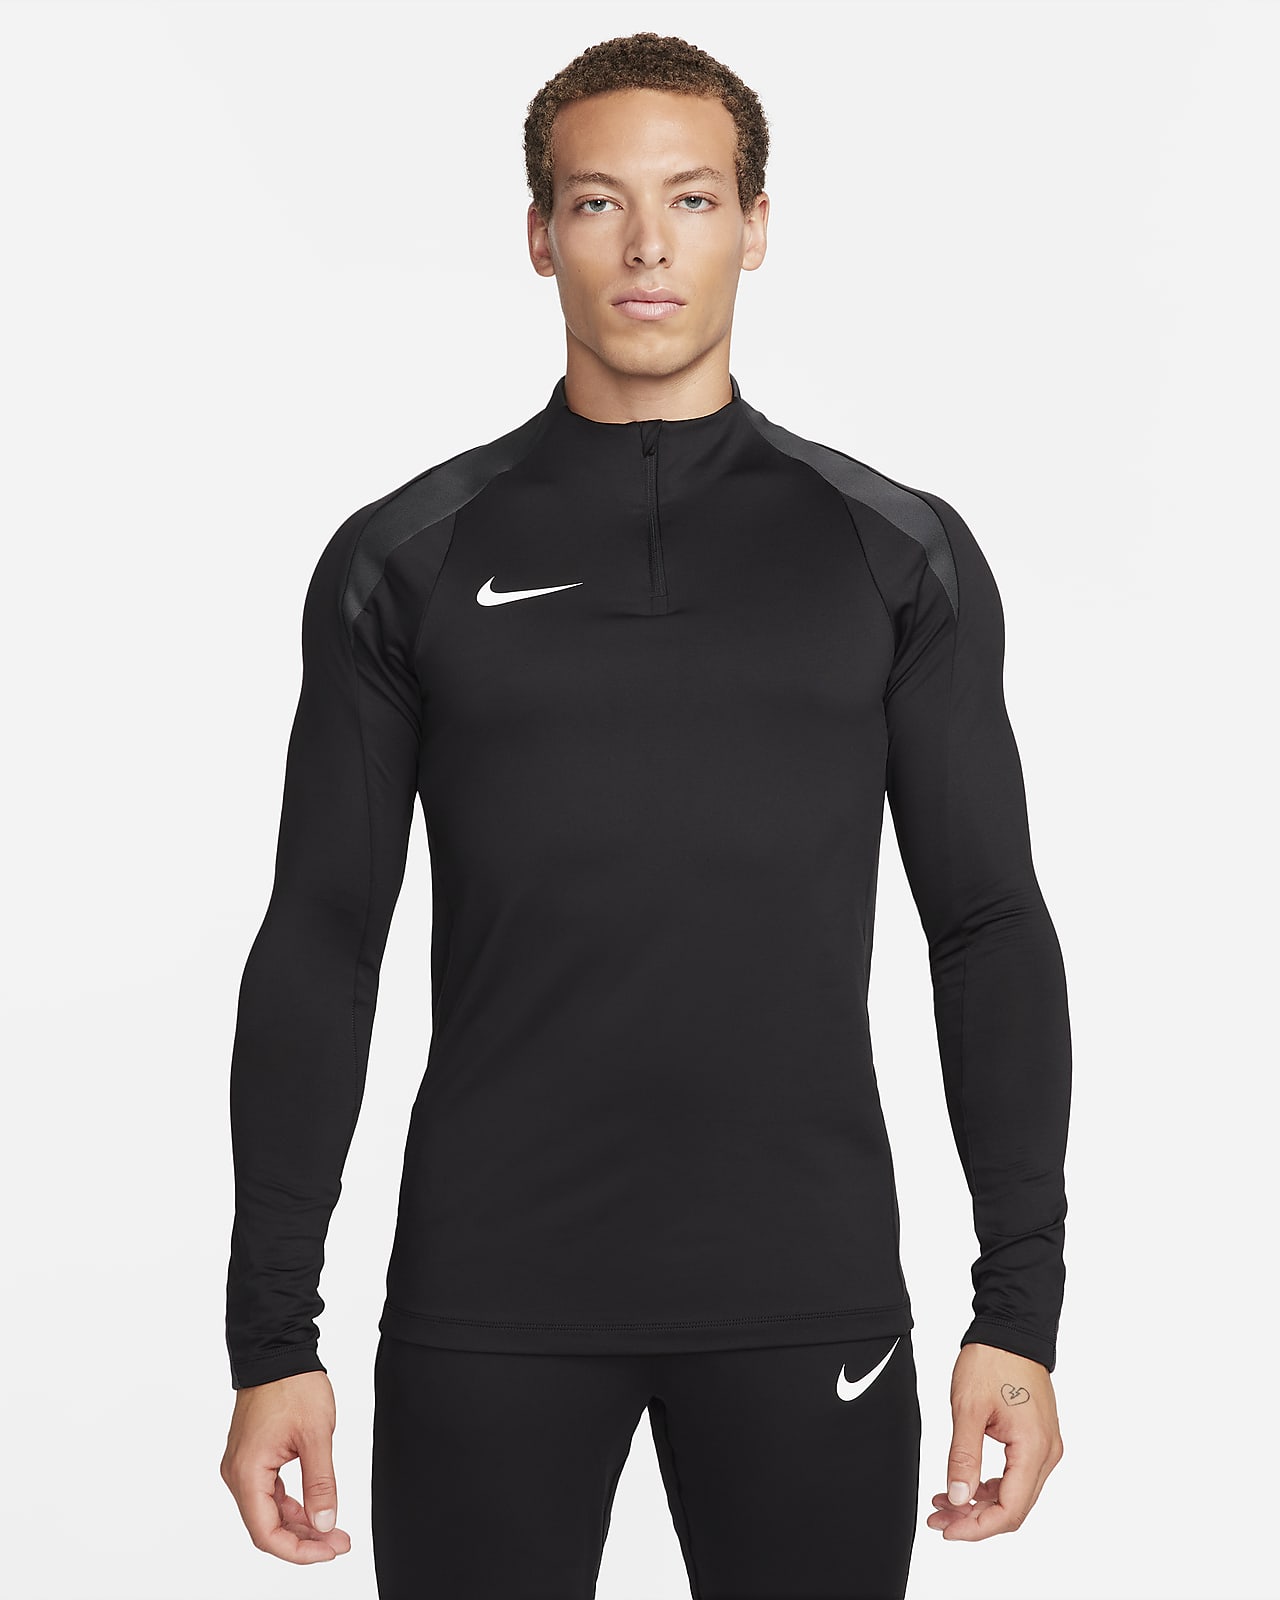 Ανδρική ποδοσφαιρική μπλούζα προπόνησης Dri-FIT με φερμουάρ στο 1/2 του μήκους Nike Strike